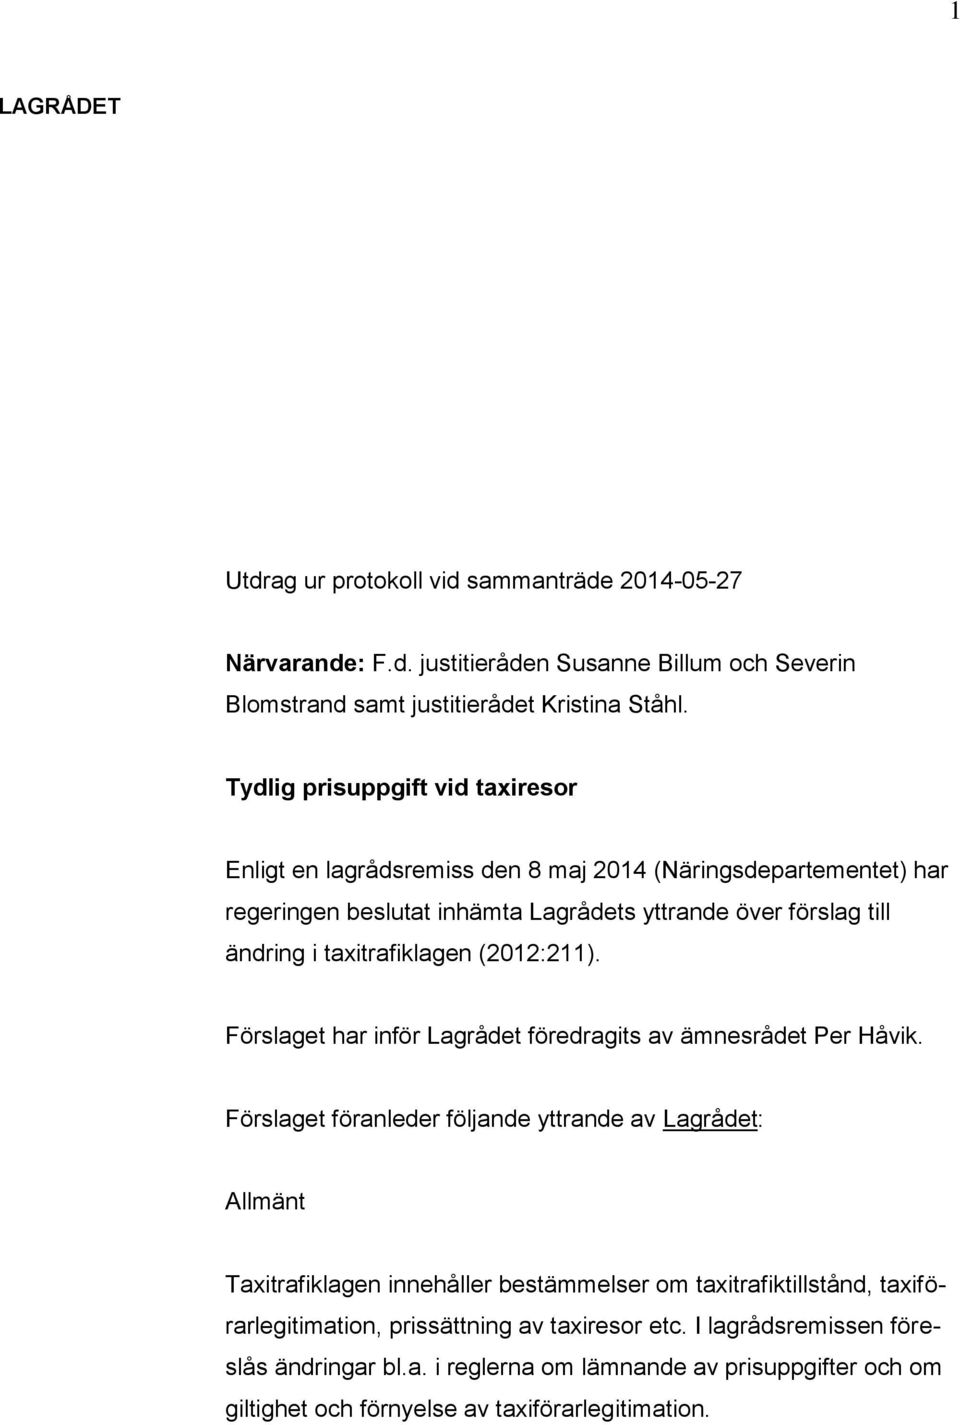 taxitrafiklagen (2012:211). Förslaget har inför Lagrådet föredragits av ämnesrådet Per Håvik.